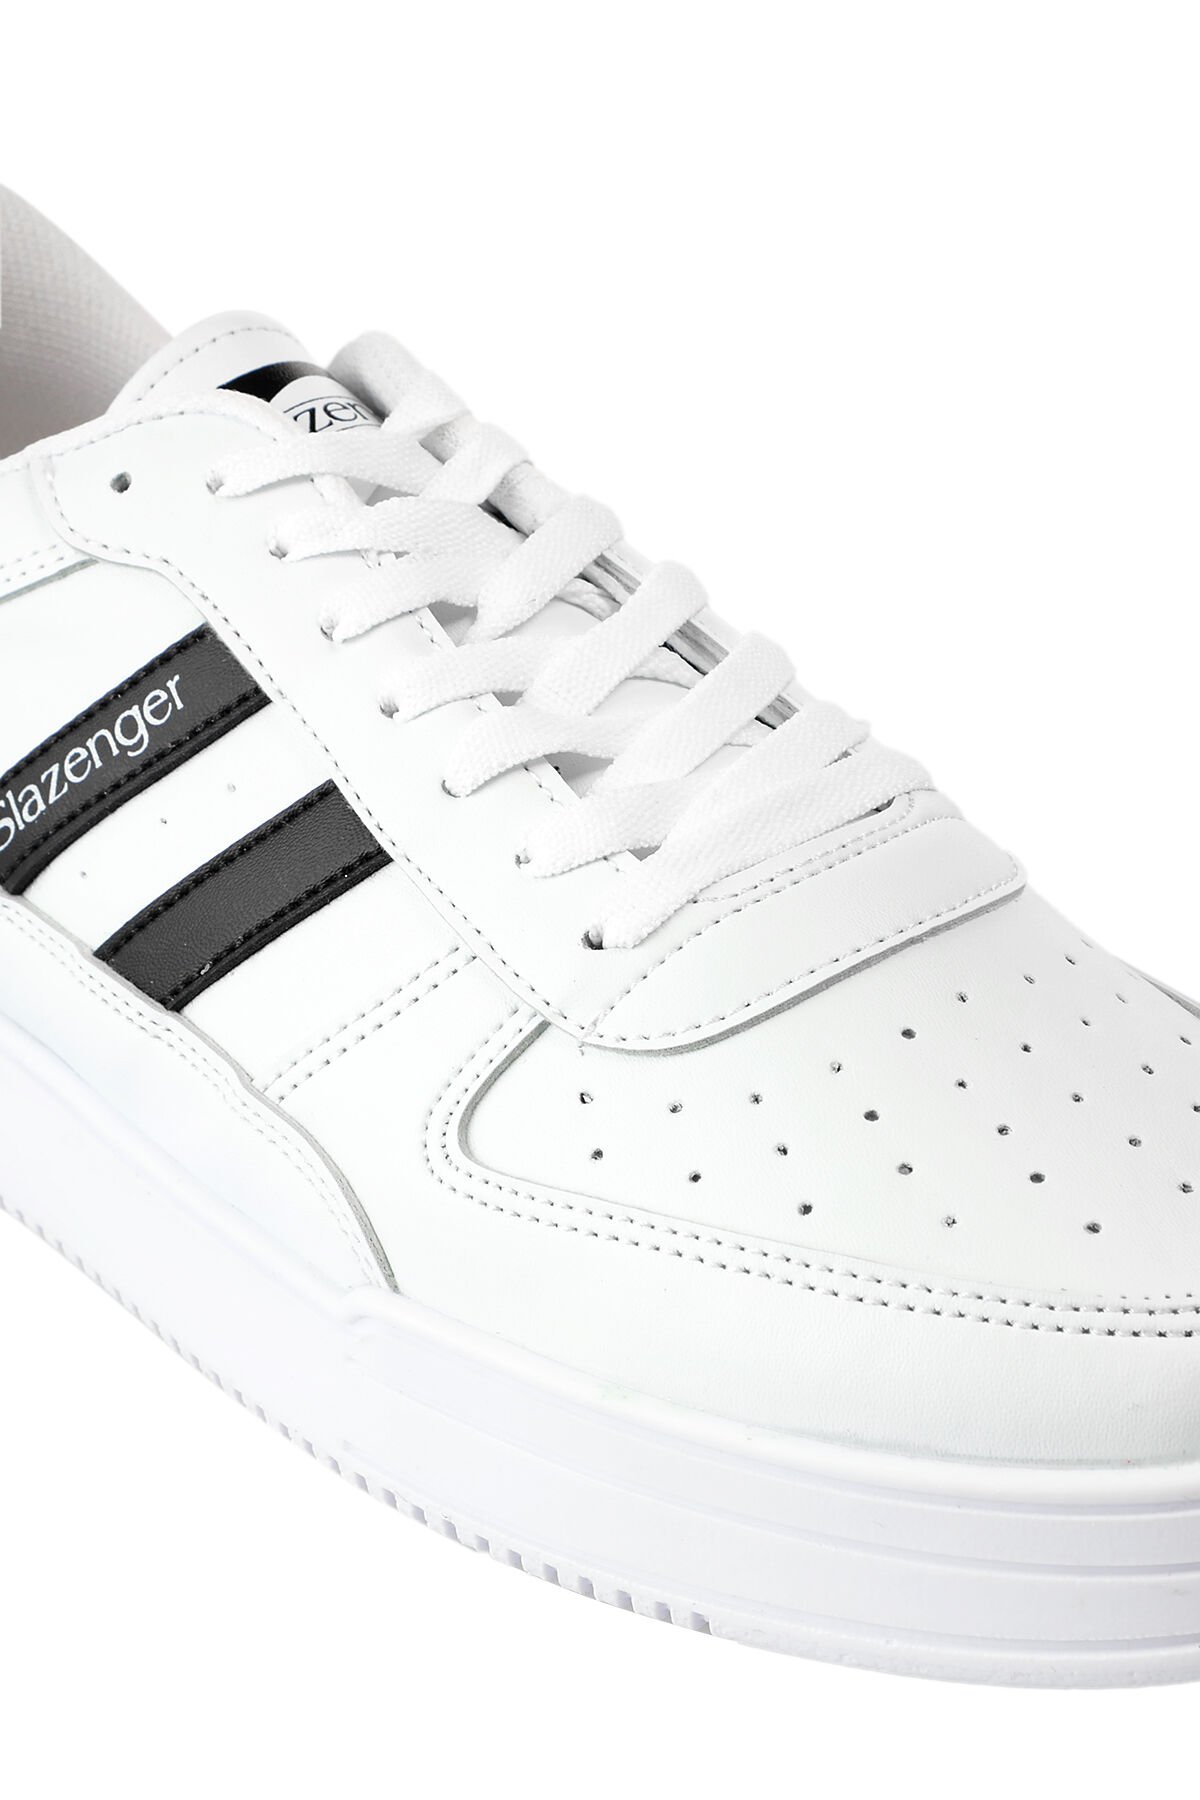 CAMP IN Sneaker Kadın Ayakkabı Beyaz / Siyah - Thumbnail